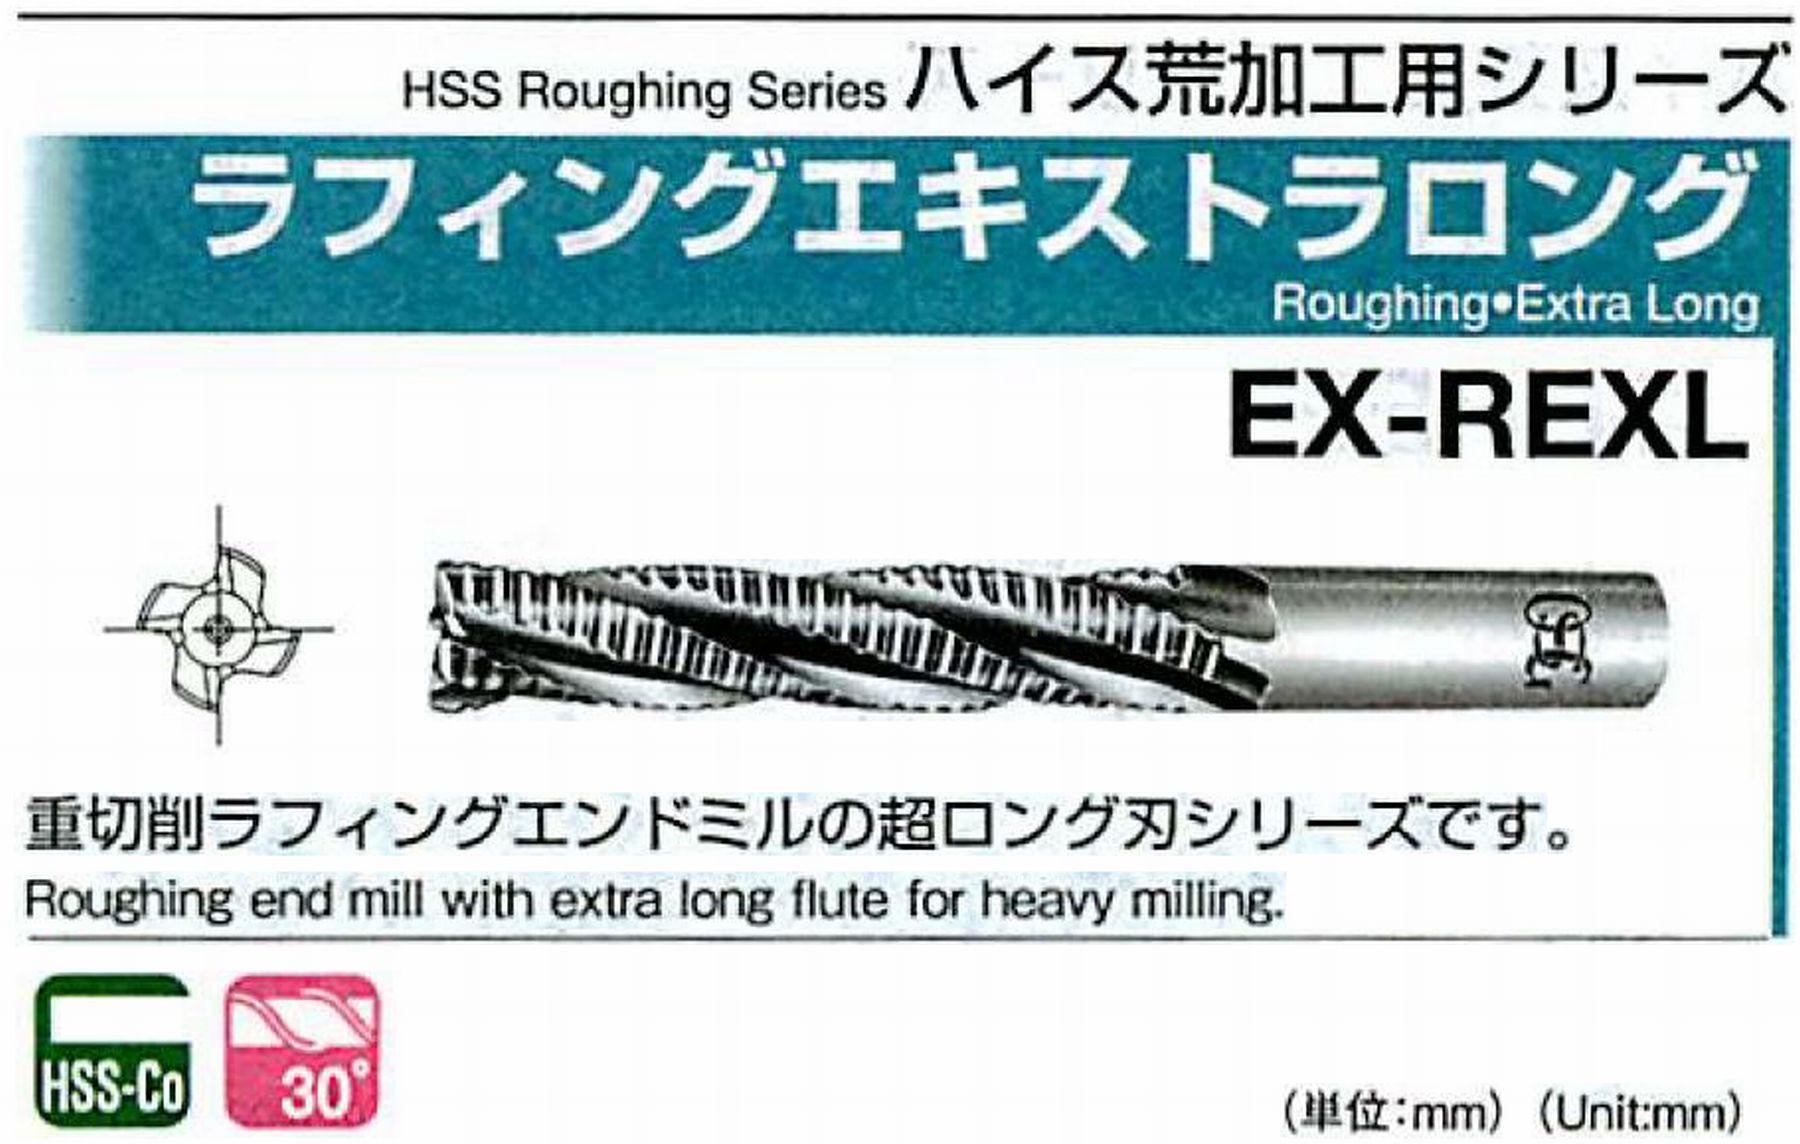 オーエスジー/OSG ラフィングエキストラ ロング EX-REXL 外径40 全長270 刃長180 シャンク径32mm 刃数6